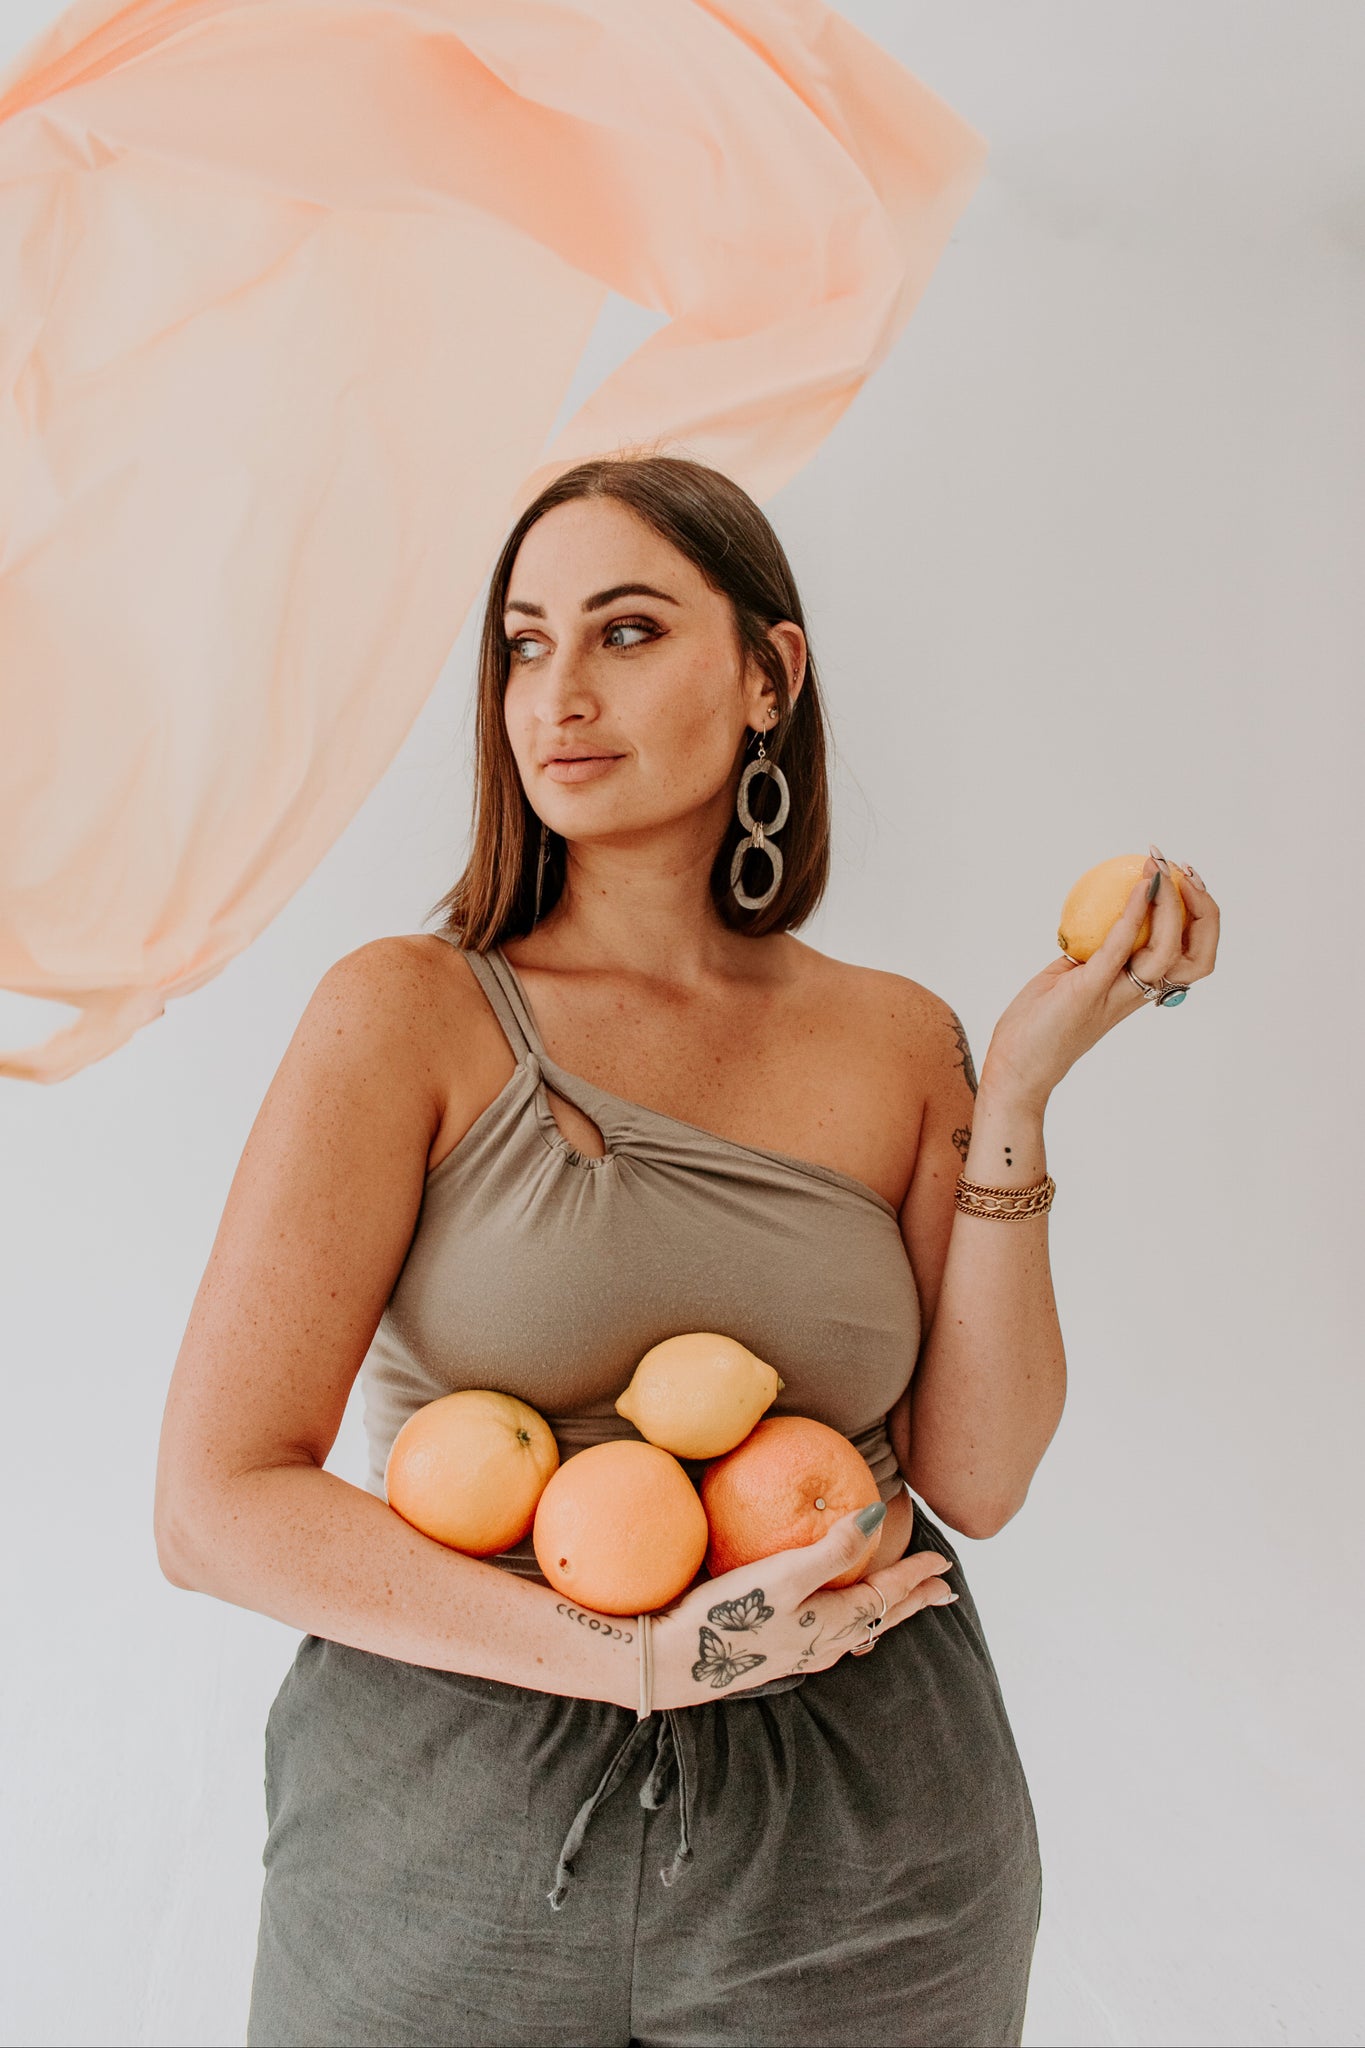 woman wearing tank top holding fruit